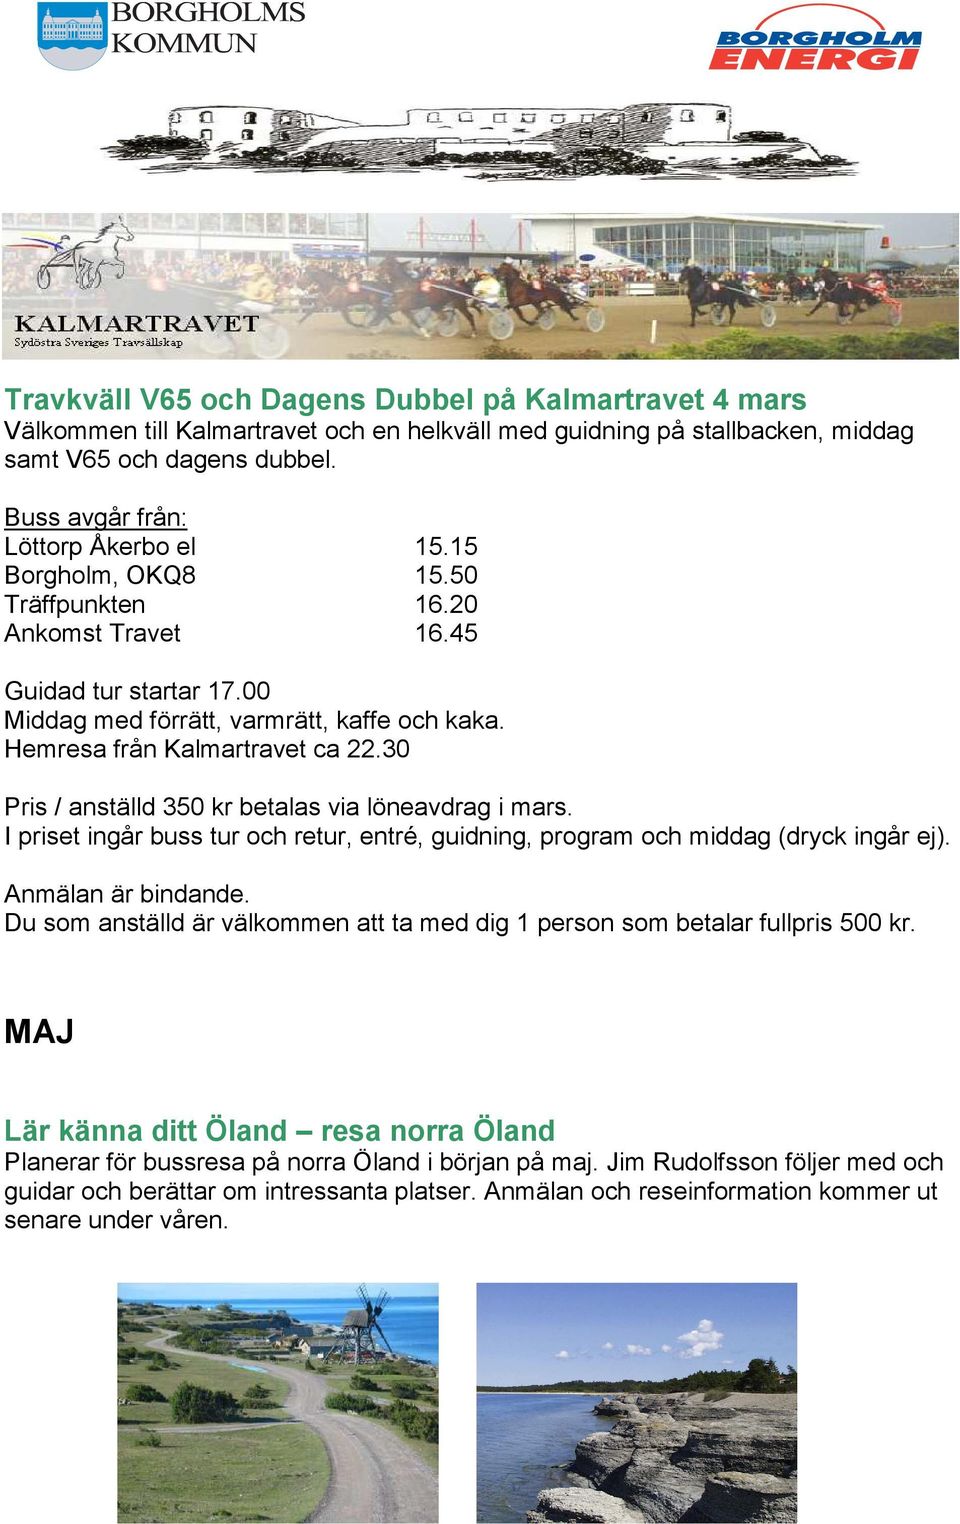 Hemresa från Kalmartravet ca 22.30 Pris / anställd 350 kr betalas via löneavdrag i mars. I priset ingår buss tur och retur, entré, guidning, program och middag (dryck ingår ej). Anmälan är bindande.